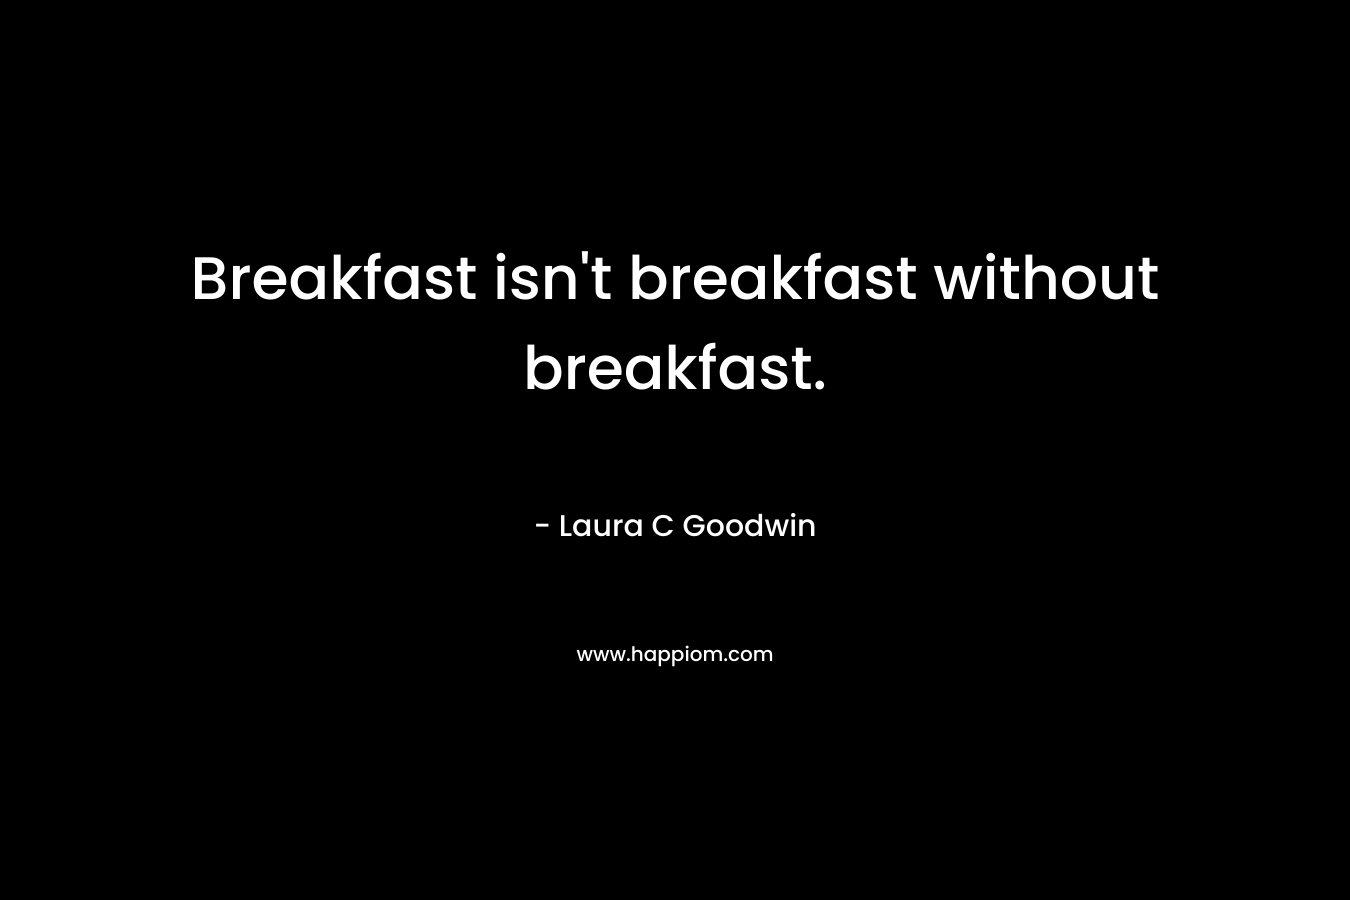 Breakfast isn't breakfast without breakfast.